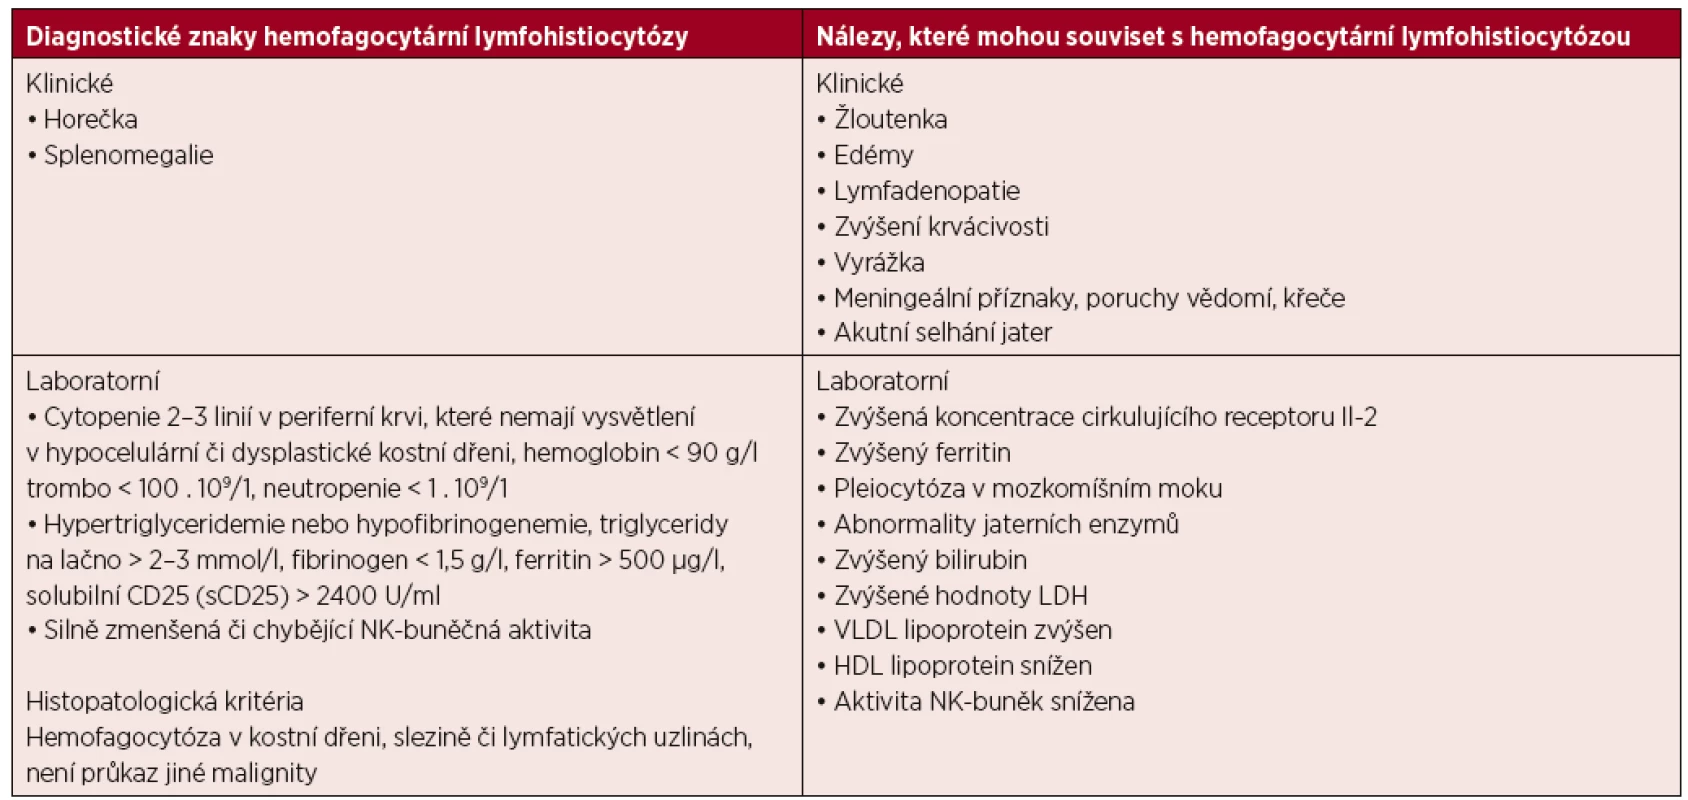 Diagnostická kritéria fagocytární lymfohistiocytózy publikovaná 2007 [73]